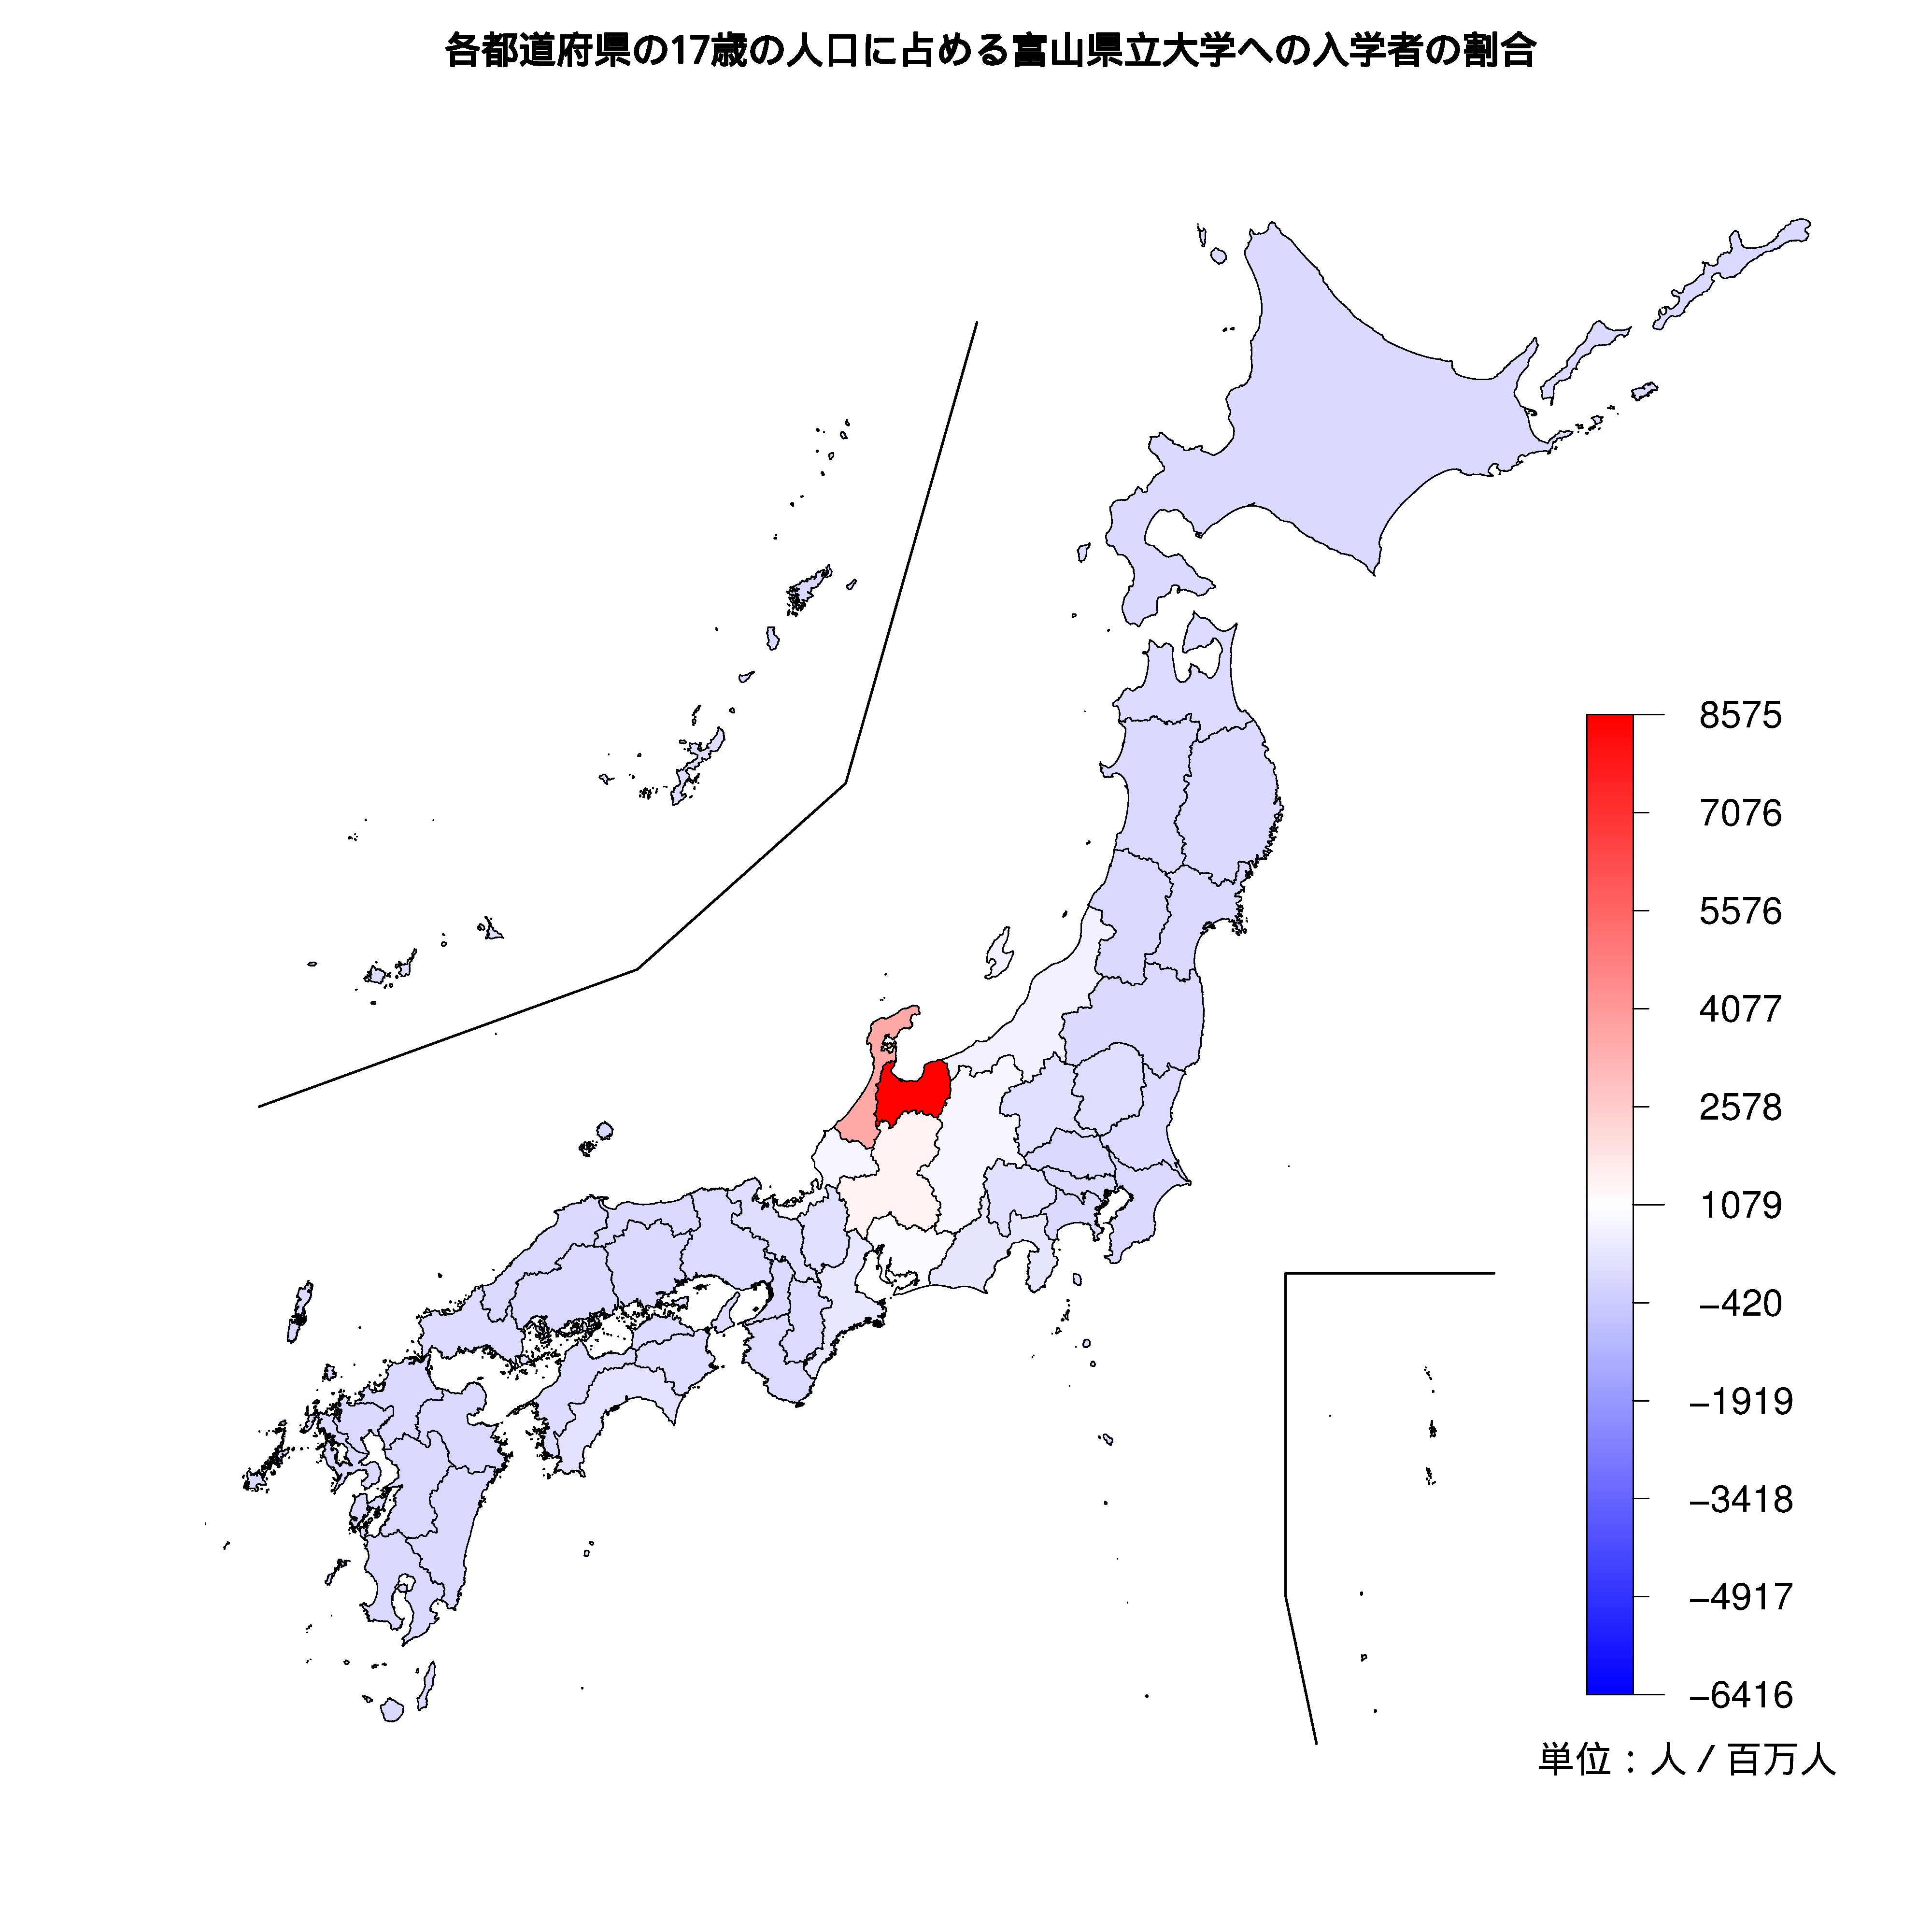 富山県立大学への入学者が多い都道府県の色分け地図